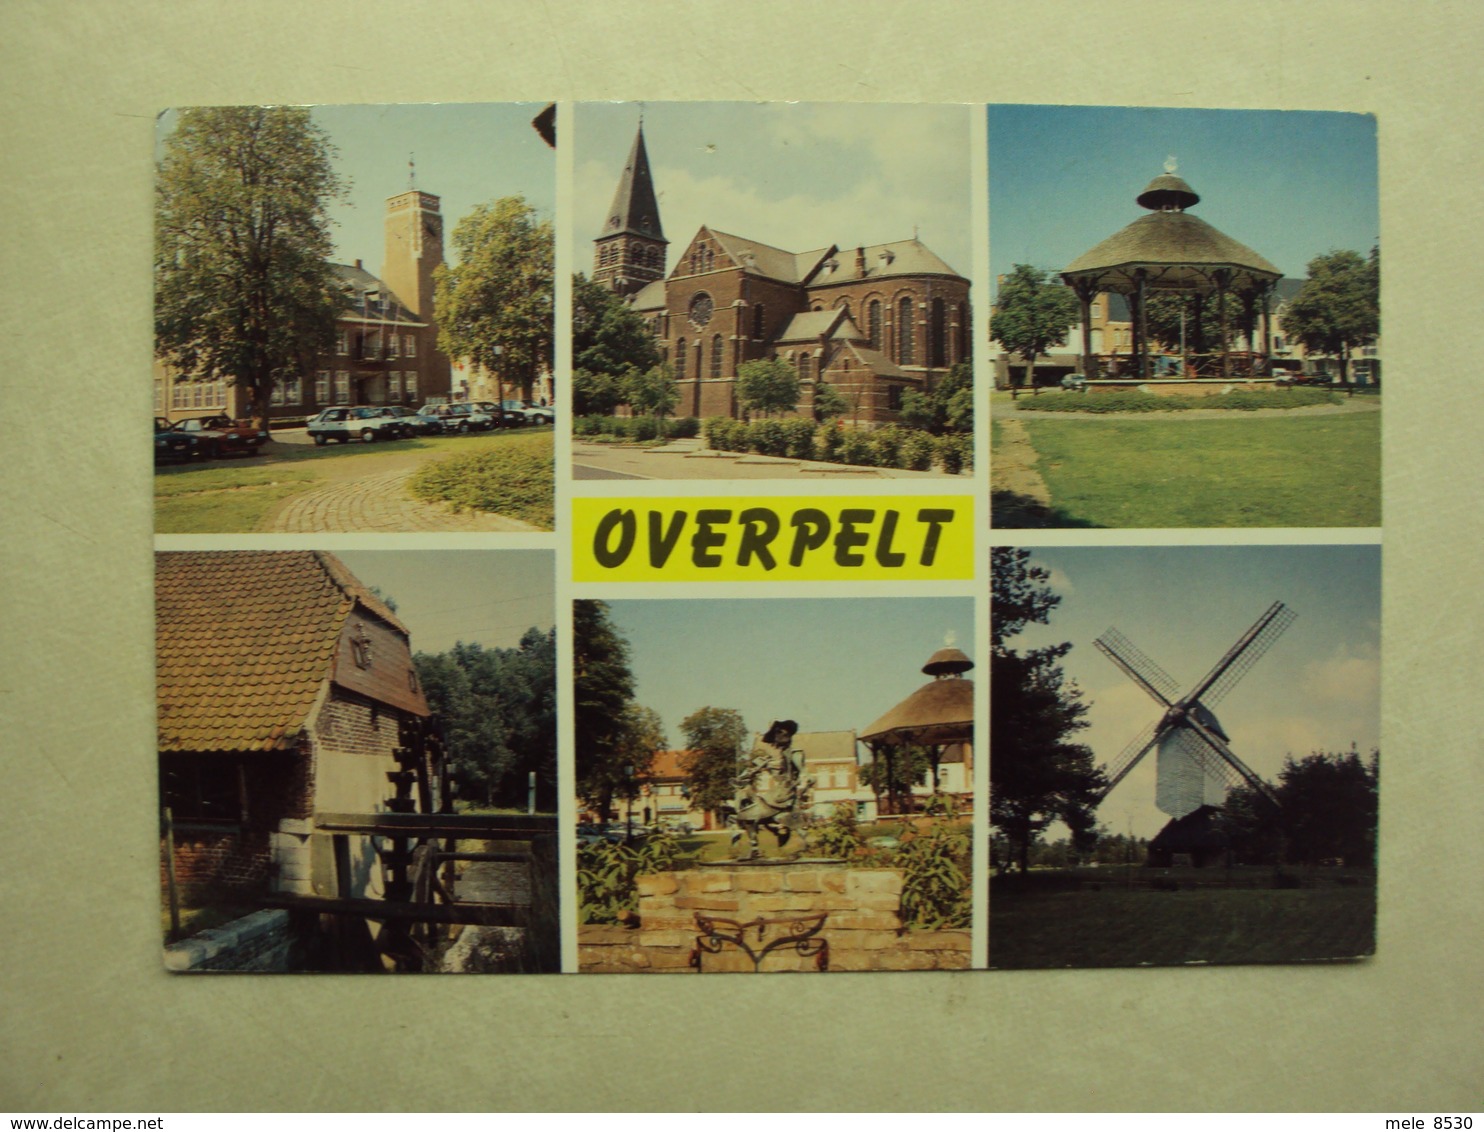 29213 - OVERPELT - 6 ZICHTEN - ZIE 2 FOTO'S - Overpelt